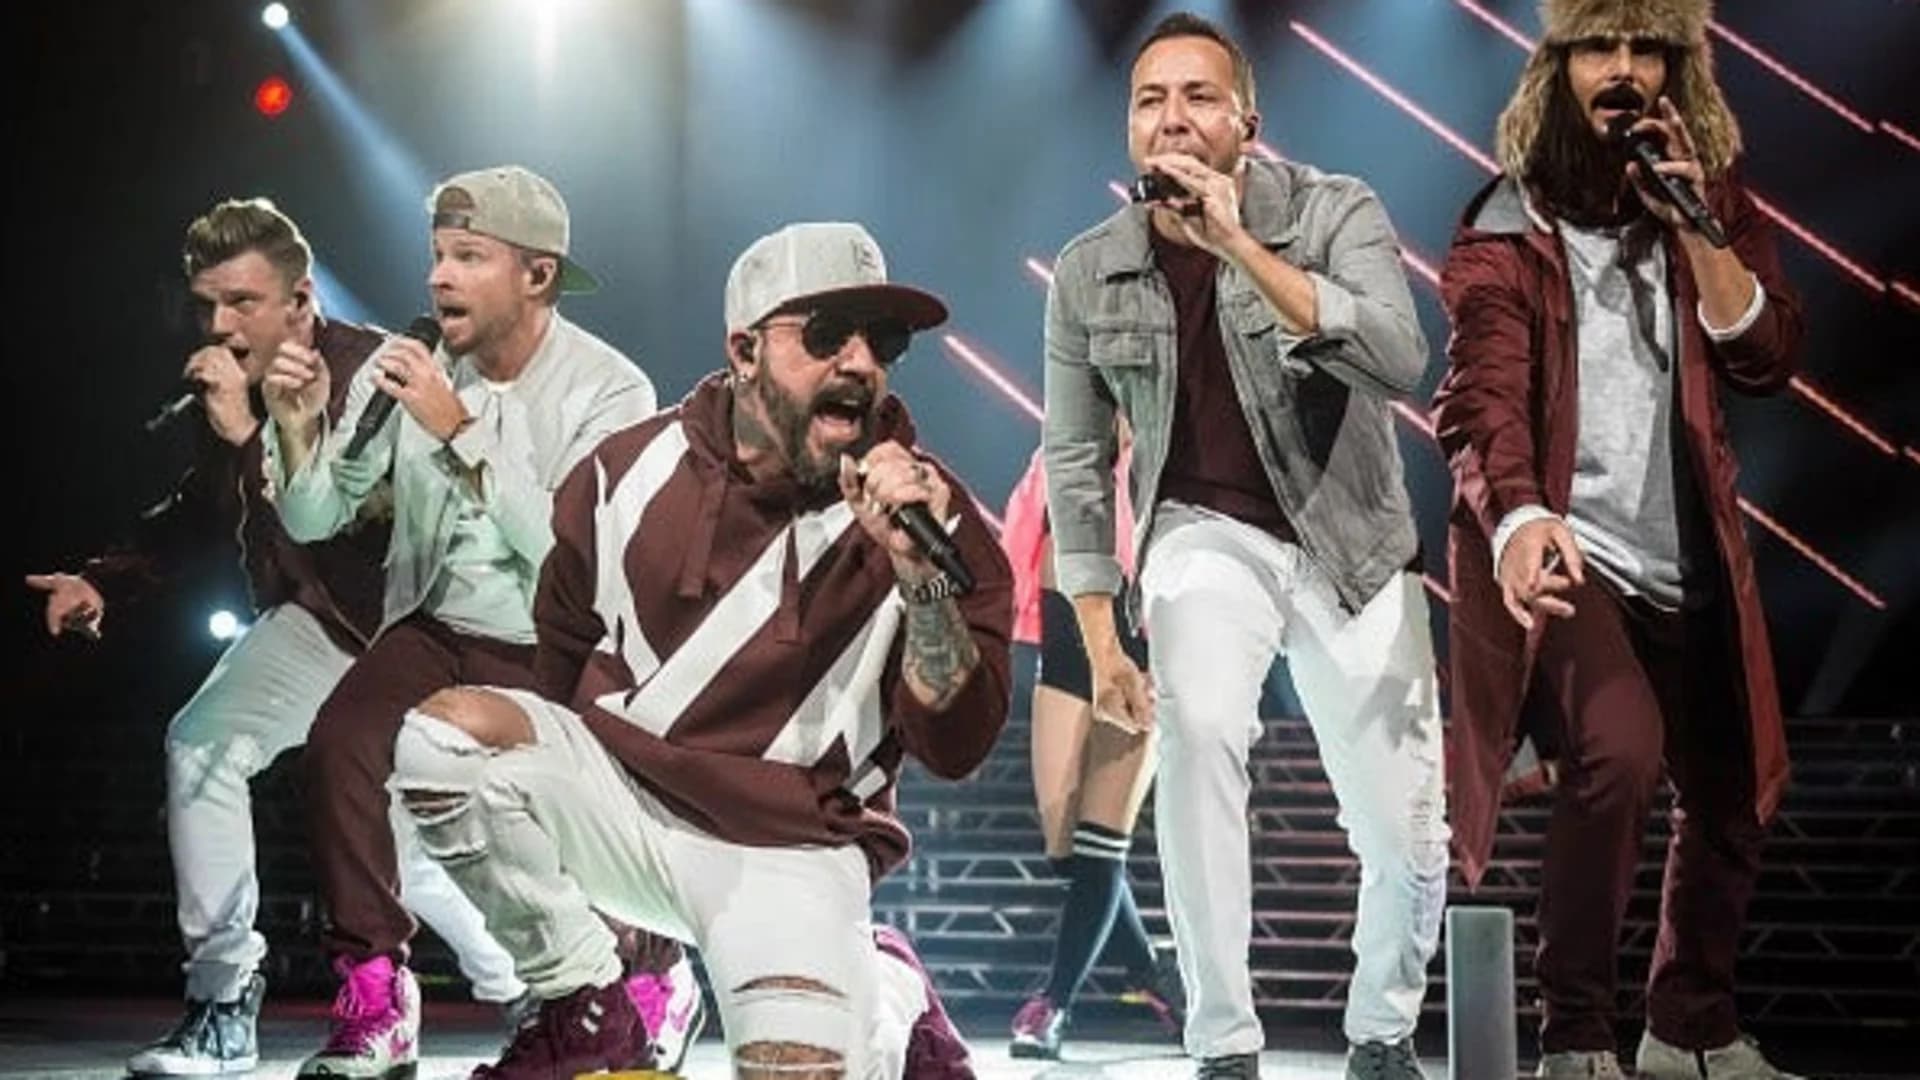 #N12BK: Backstreet Boys release new single